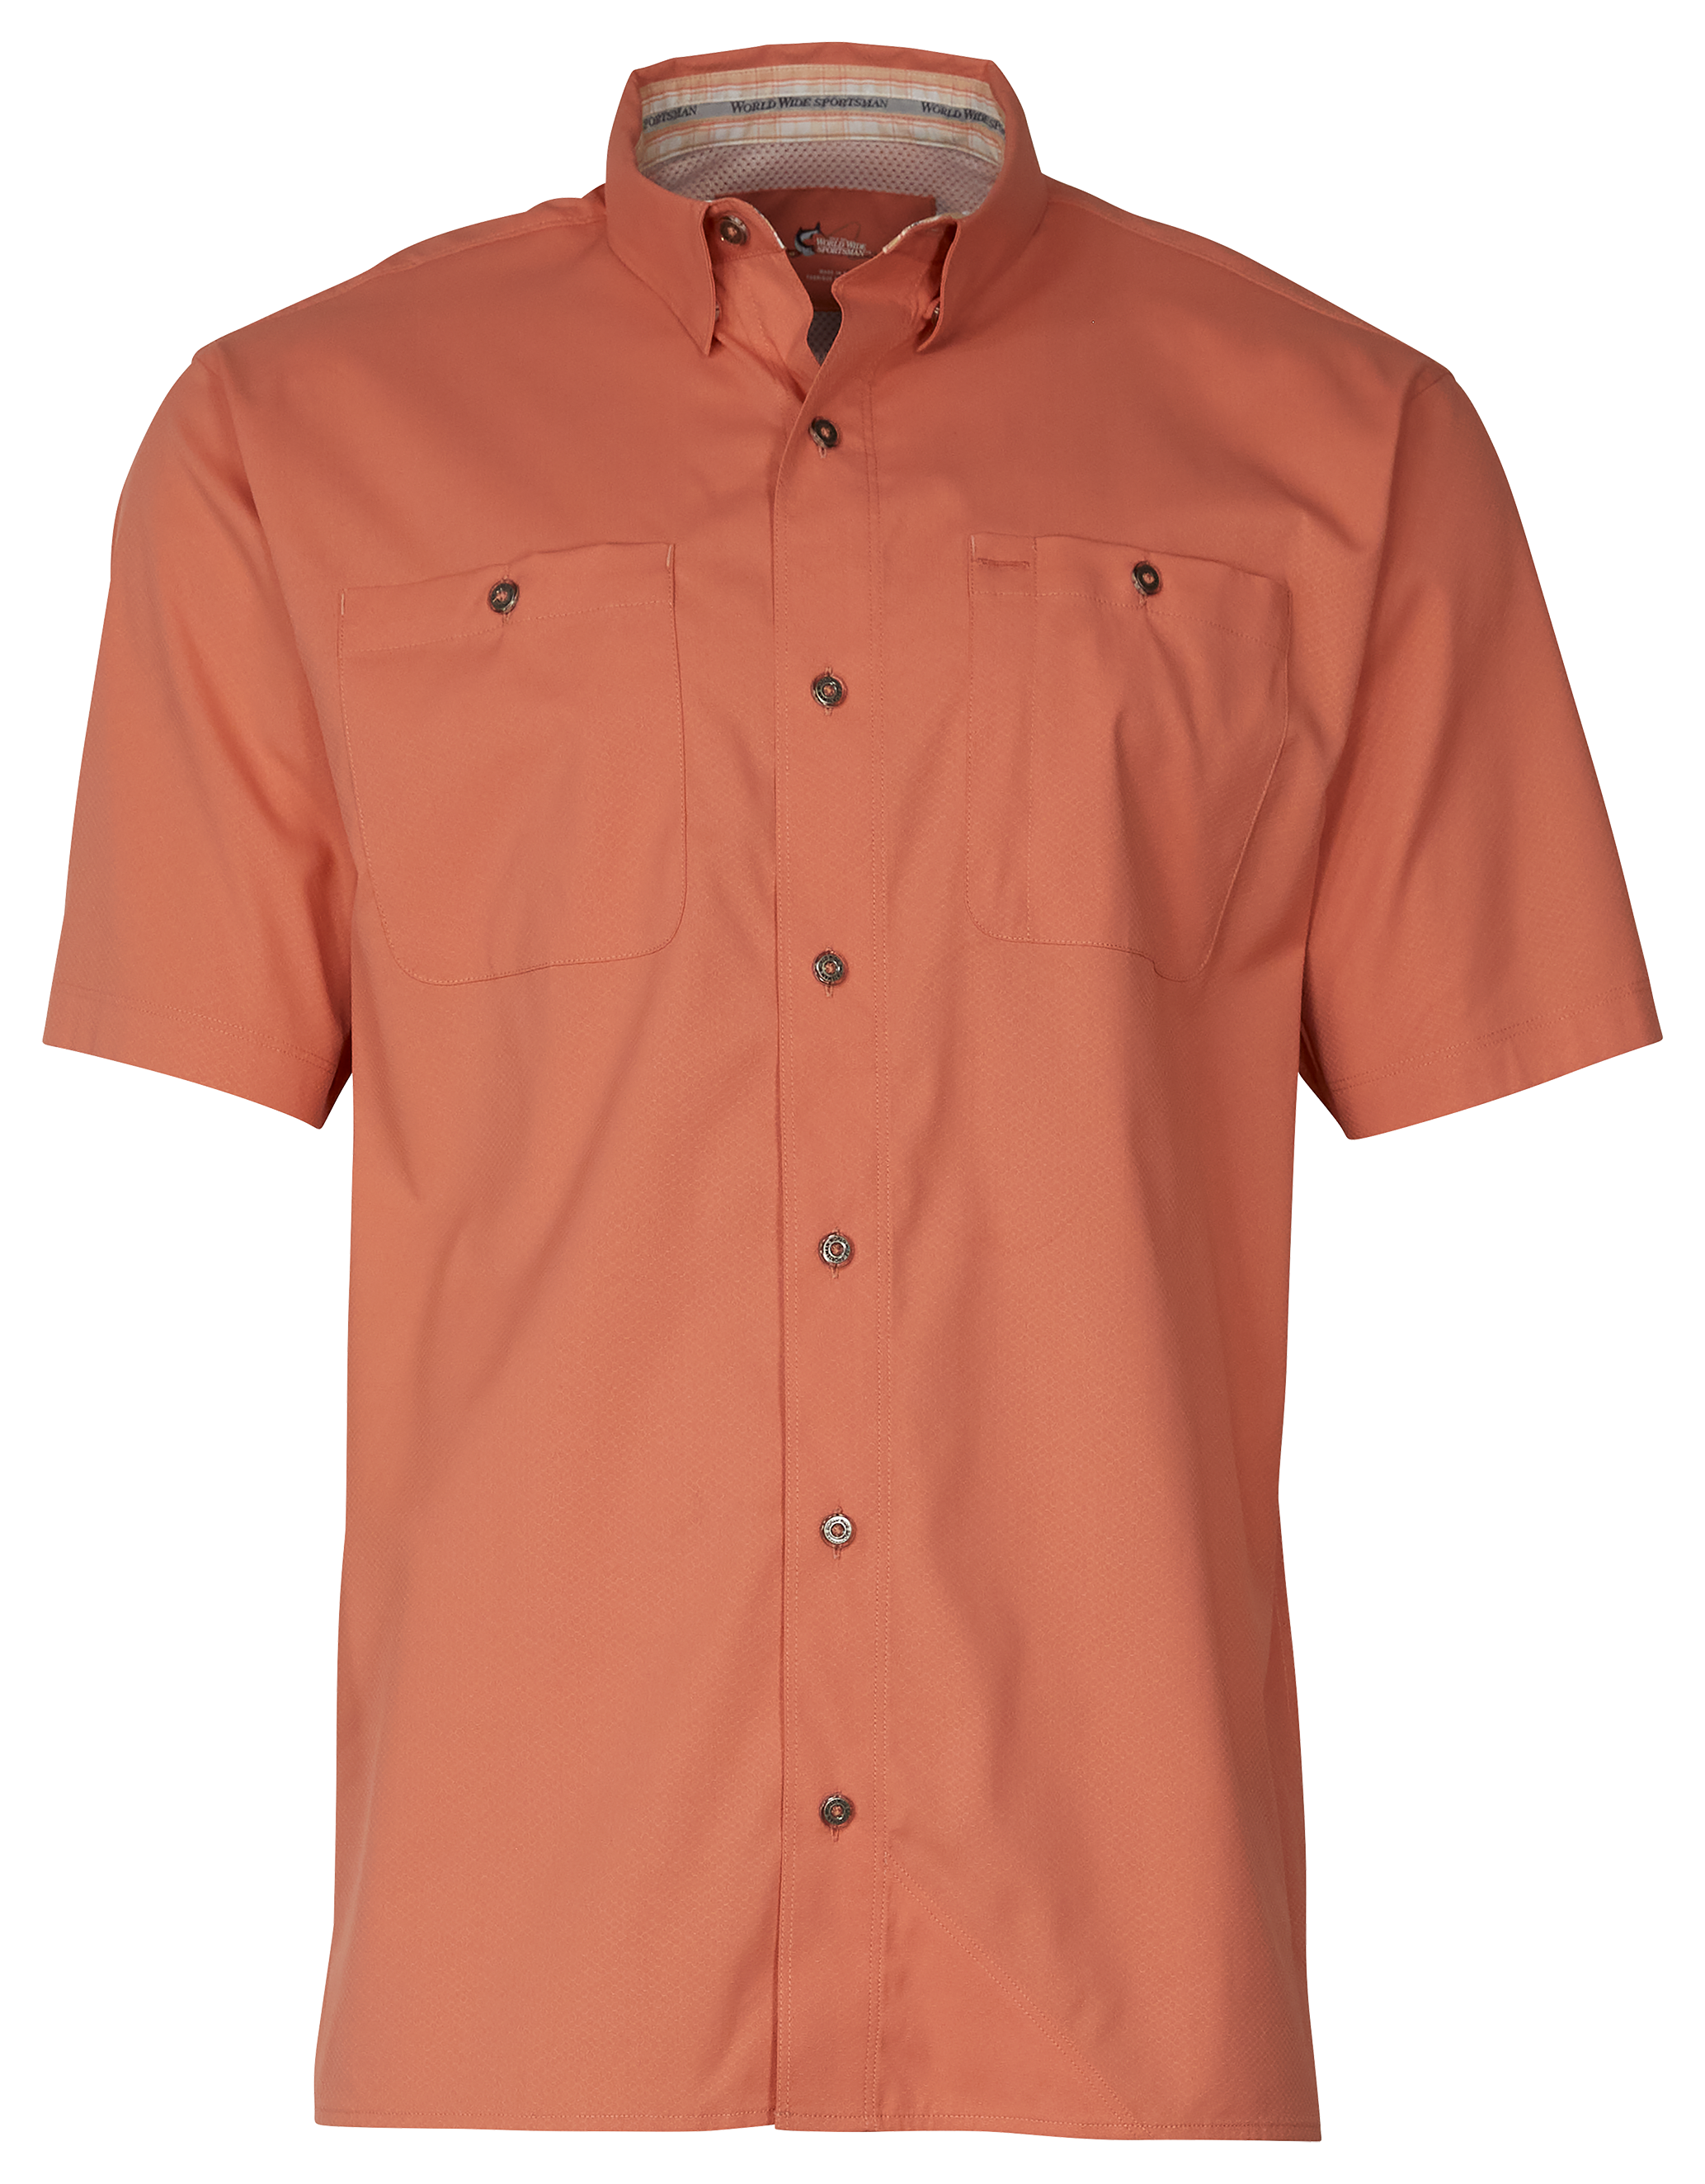 World Wide Sportsman Ultimate Angler Solid Short-Sleeve Shirt for Men - Crabapple - XL